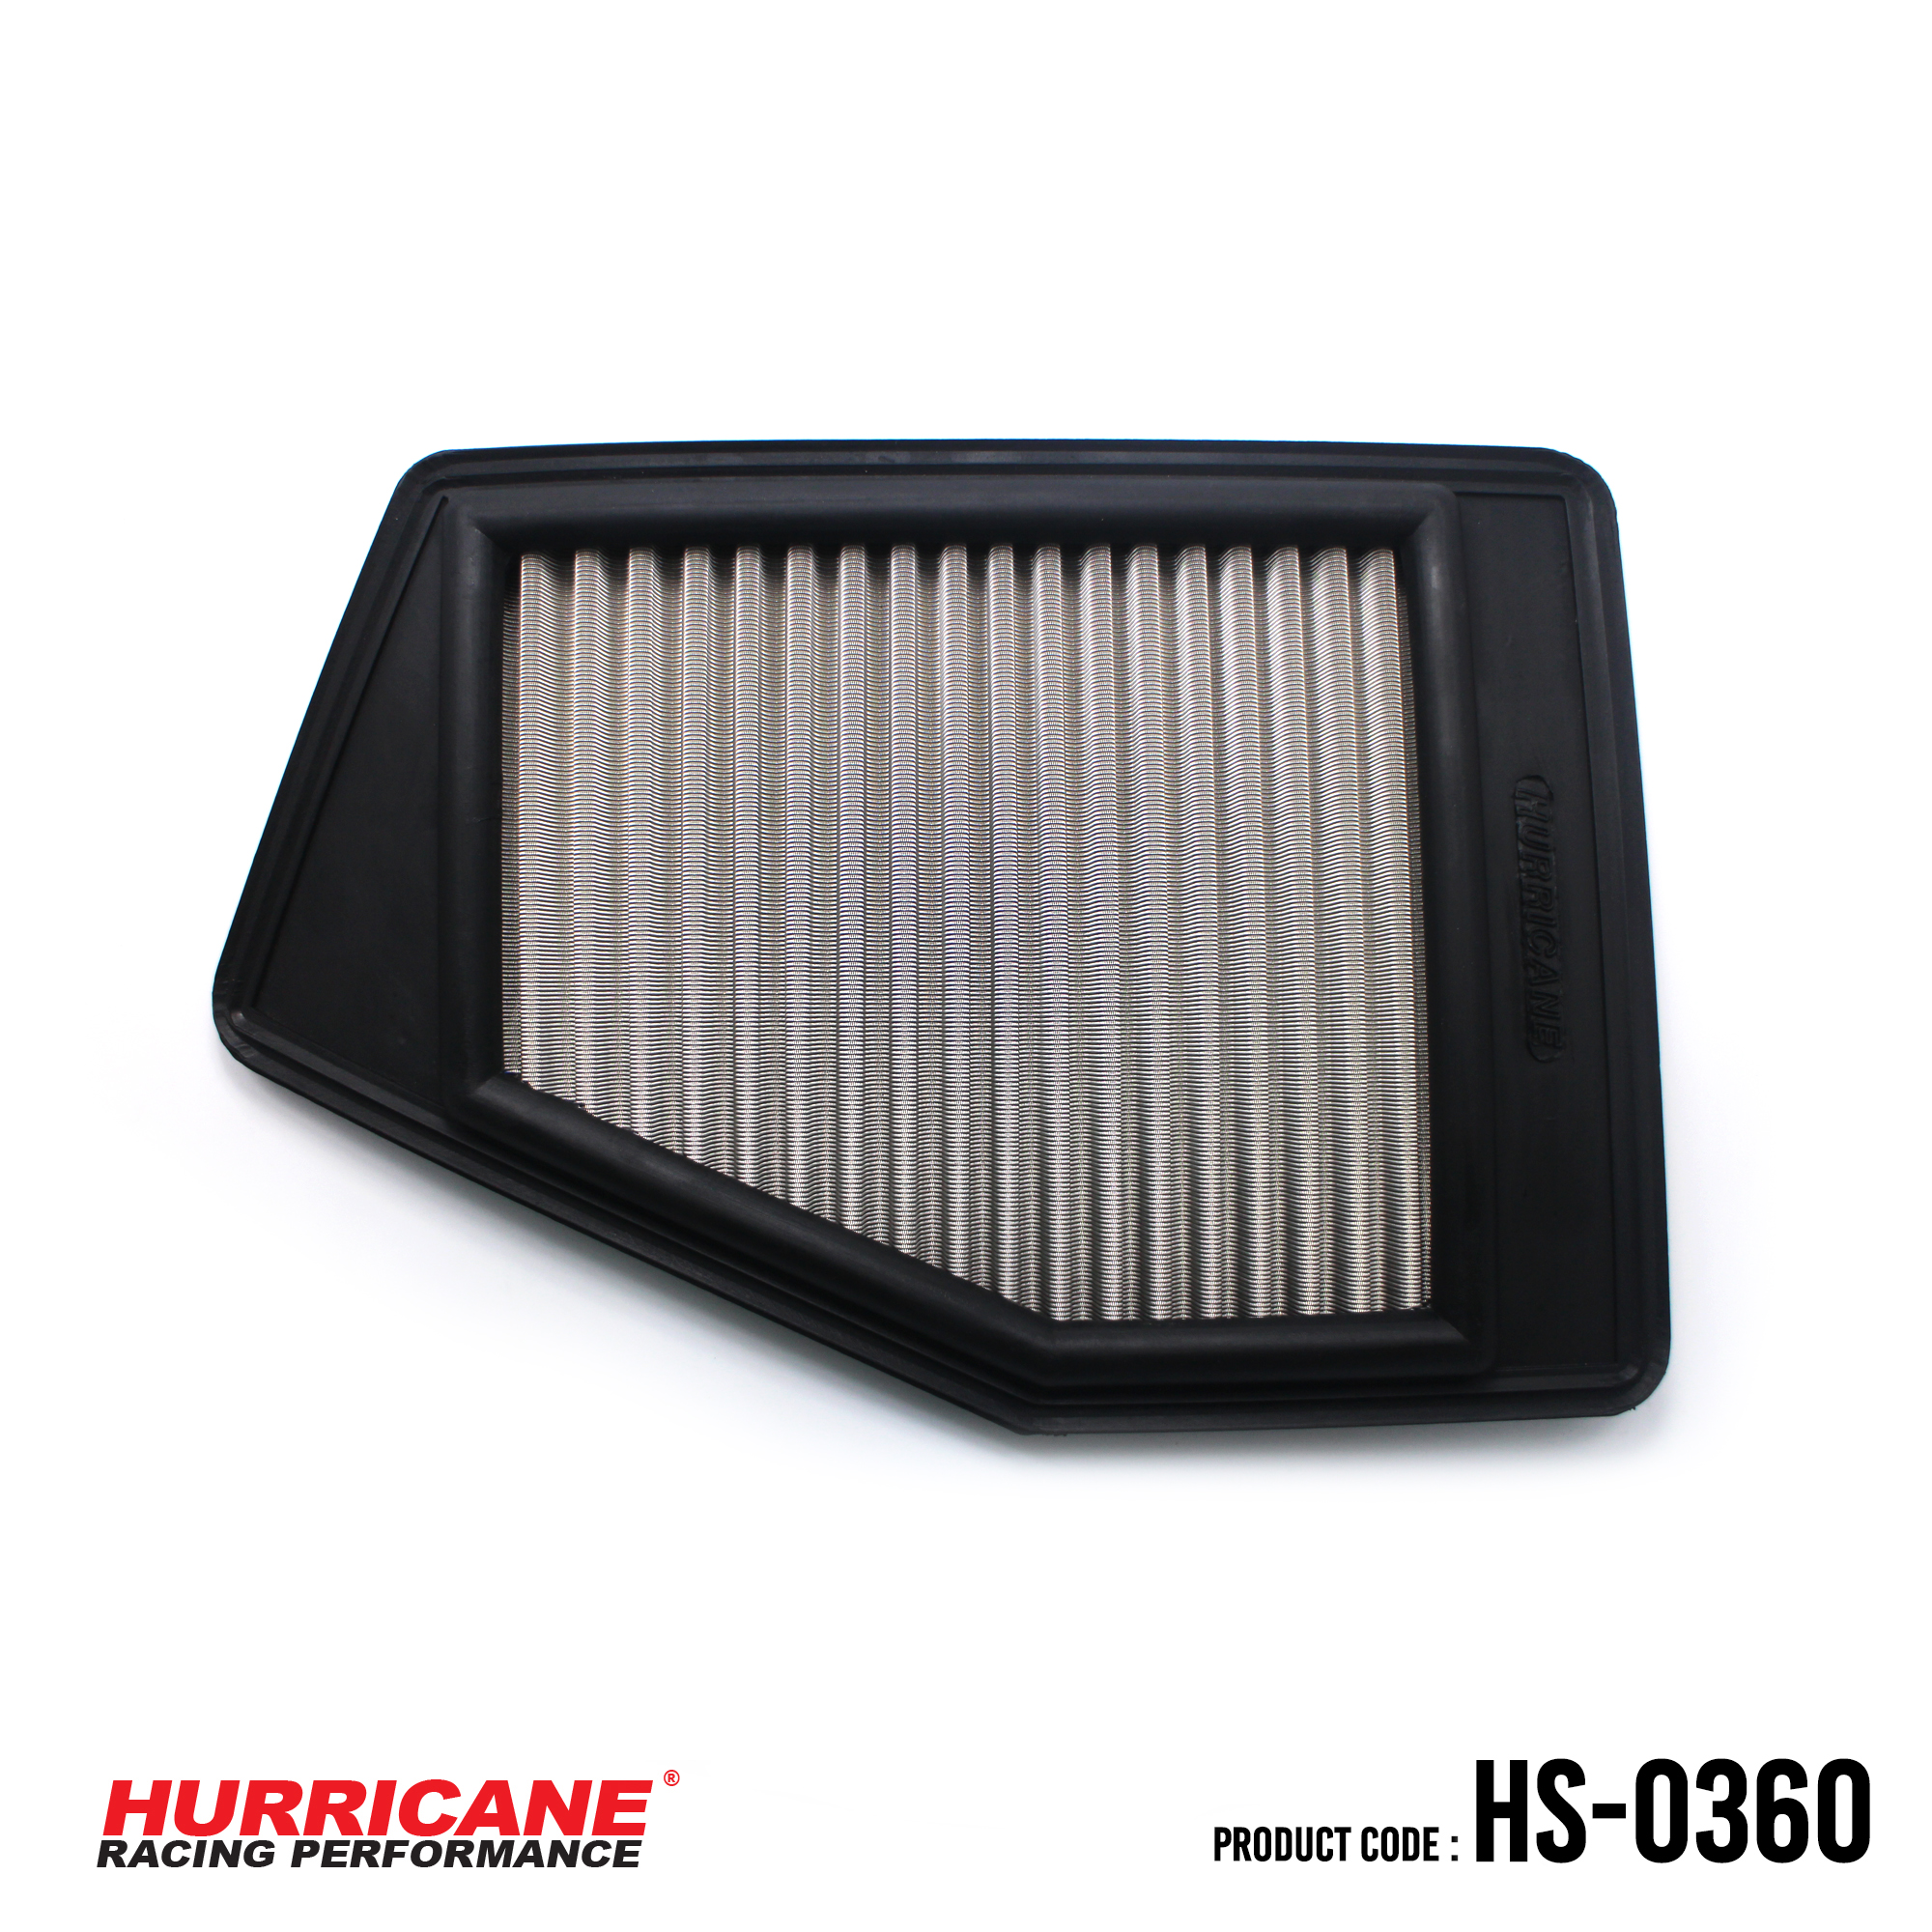 HURRICANE STAINLESS STEEL AIR FILTER FOR HS-0360 Honda